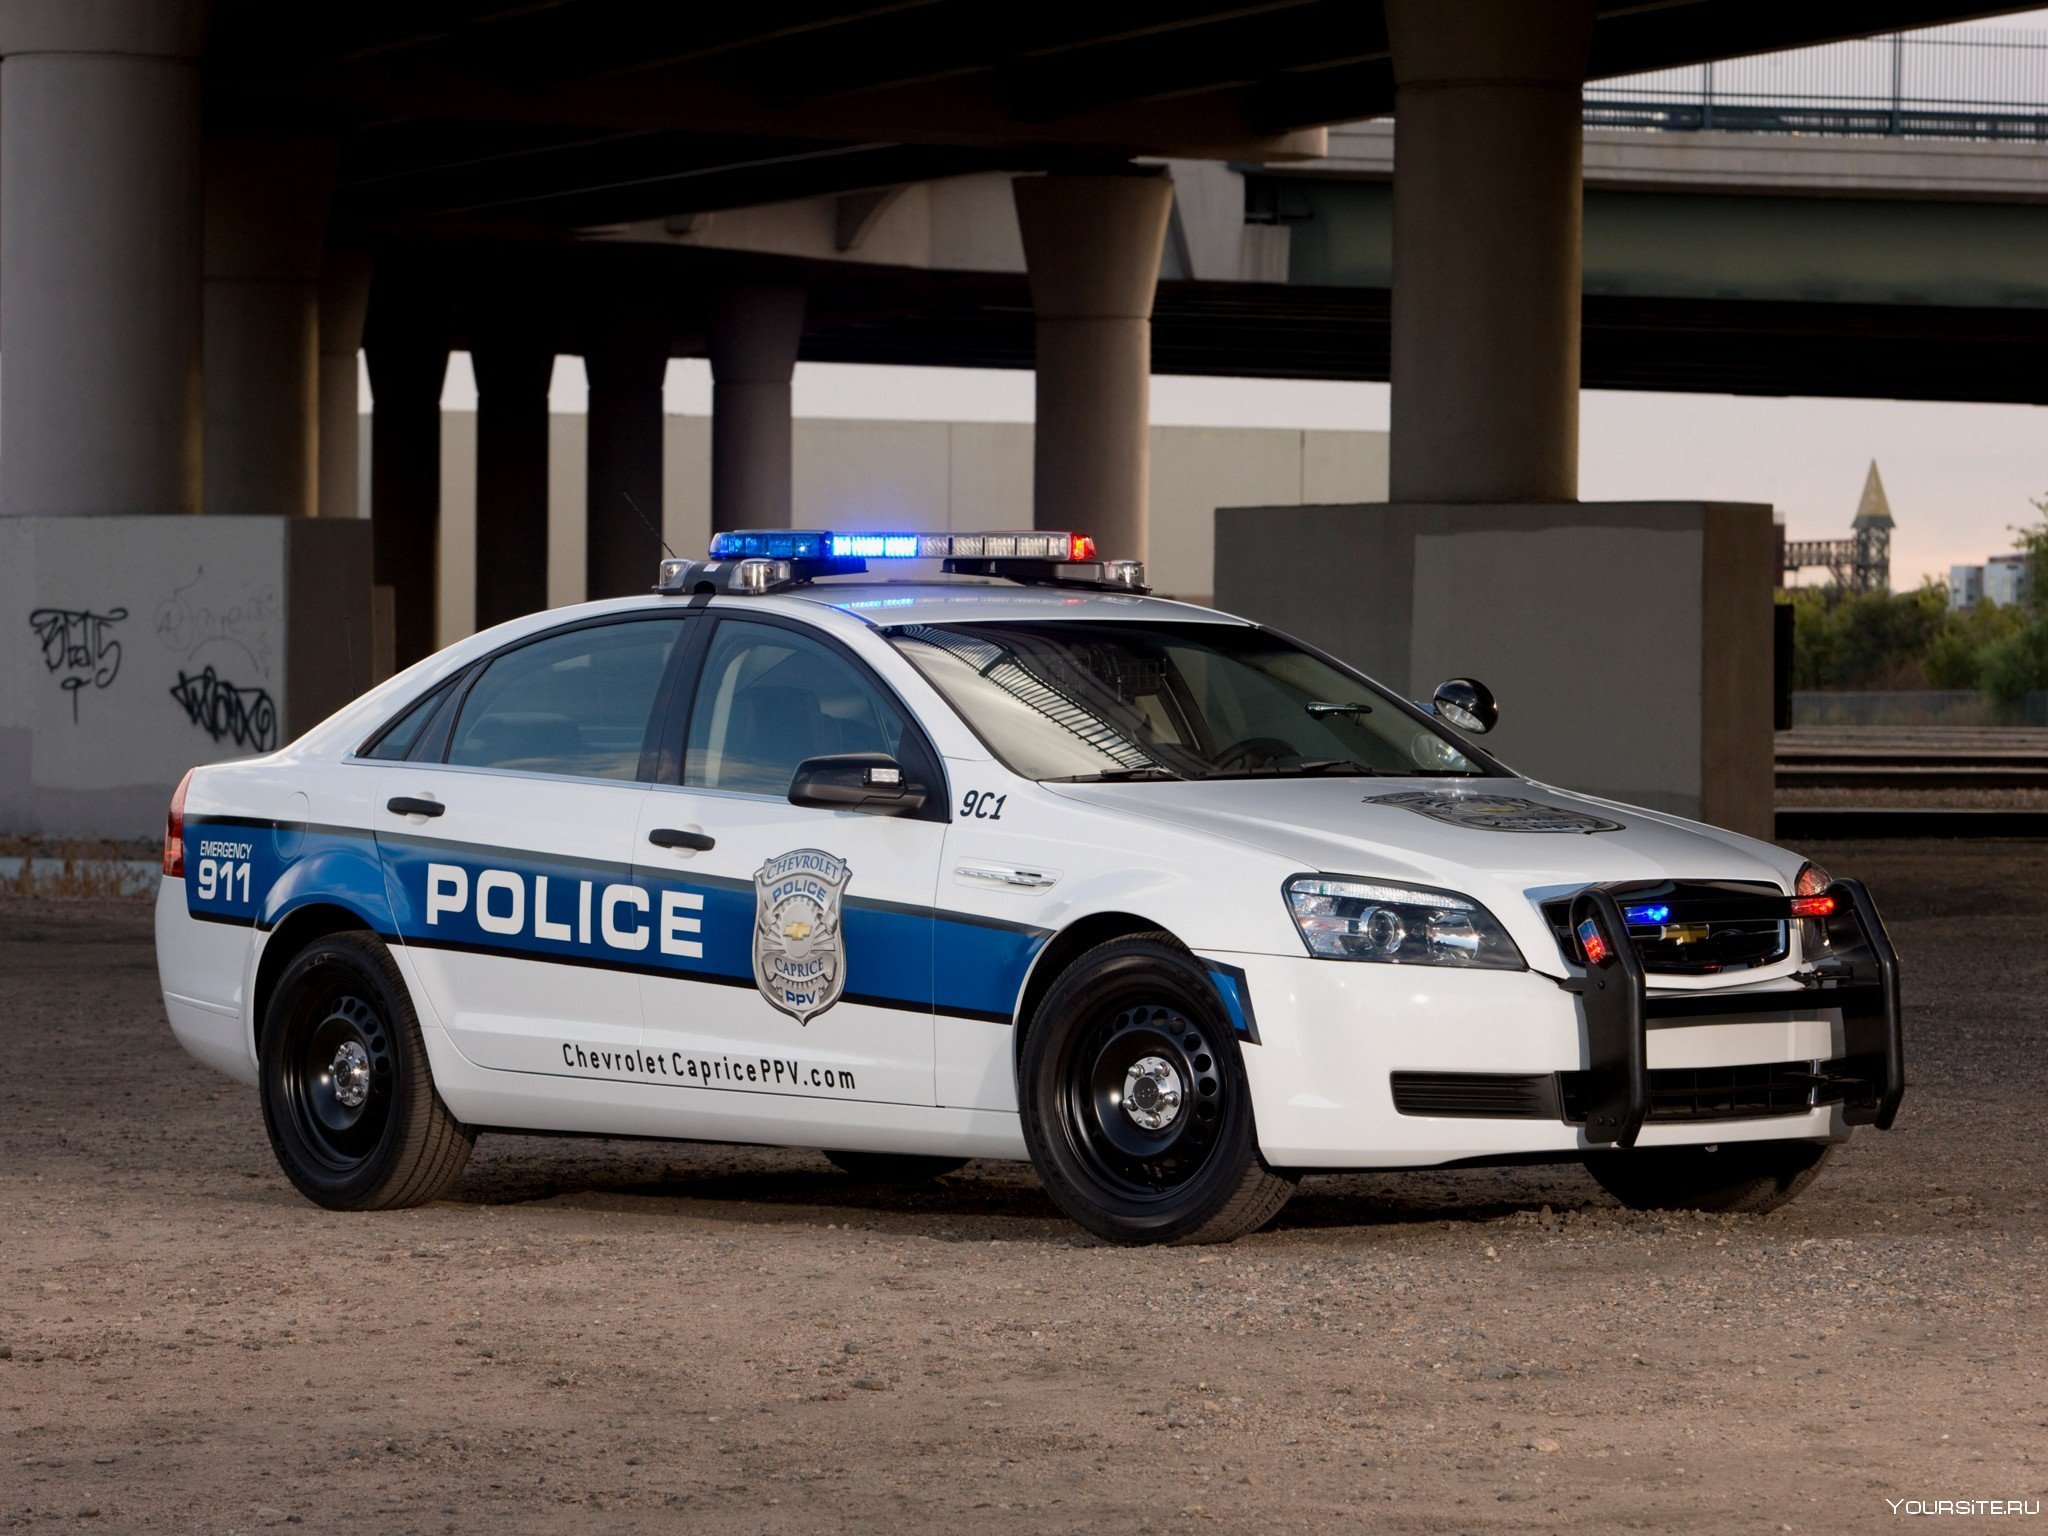 Как получить полицейскую машину. Chevrolet Caprice Police. Chevrolet Caprice 2006 Police. Chevrolet Caprice Police Patrol vehicle. Chevrolet Caprice Police 2010.